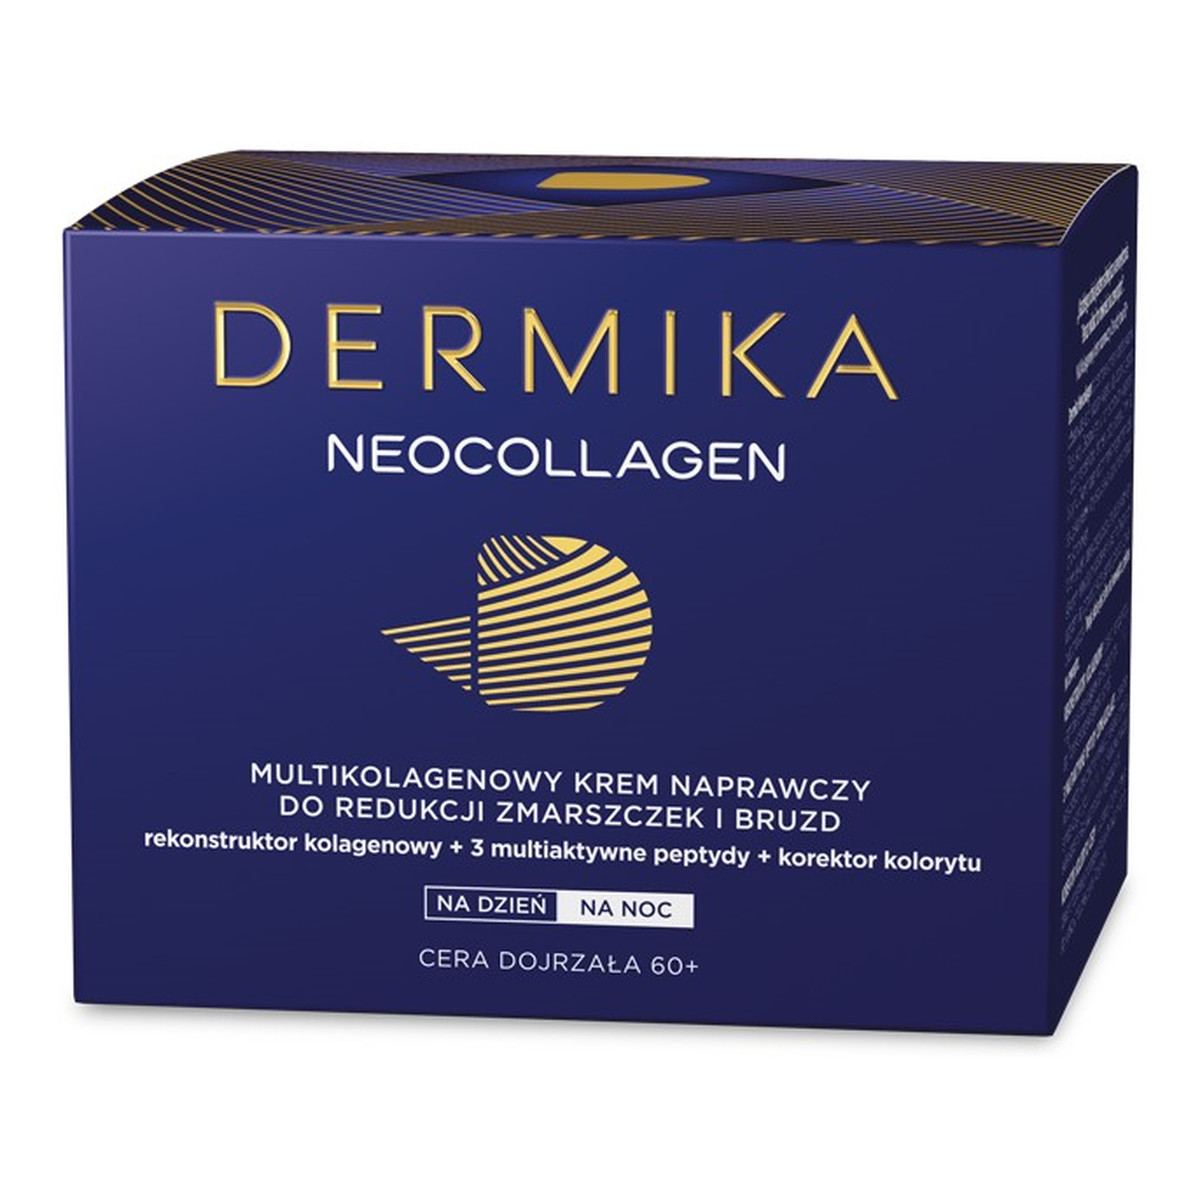 Dermika Neocollagen 60+ Multikolagenowy Krem Naprawczy Redukujący Zmarszczki i Bruzdy Na Dzień i Na Noc 50ml